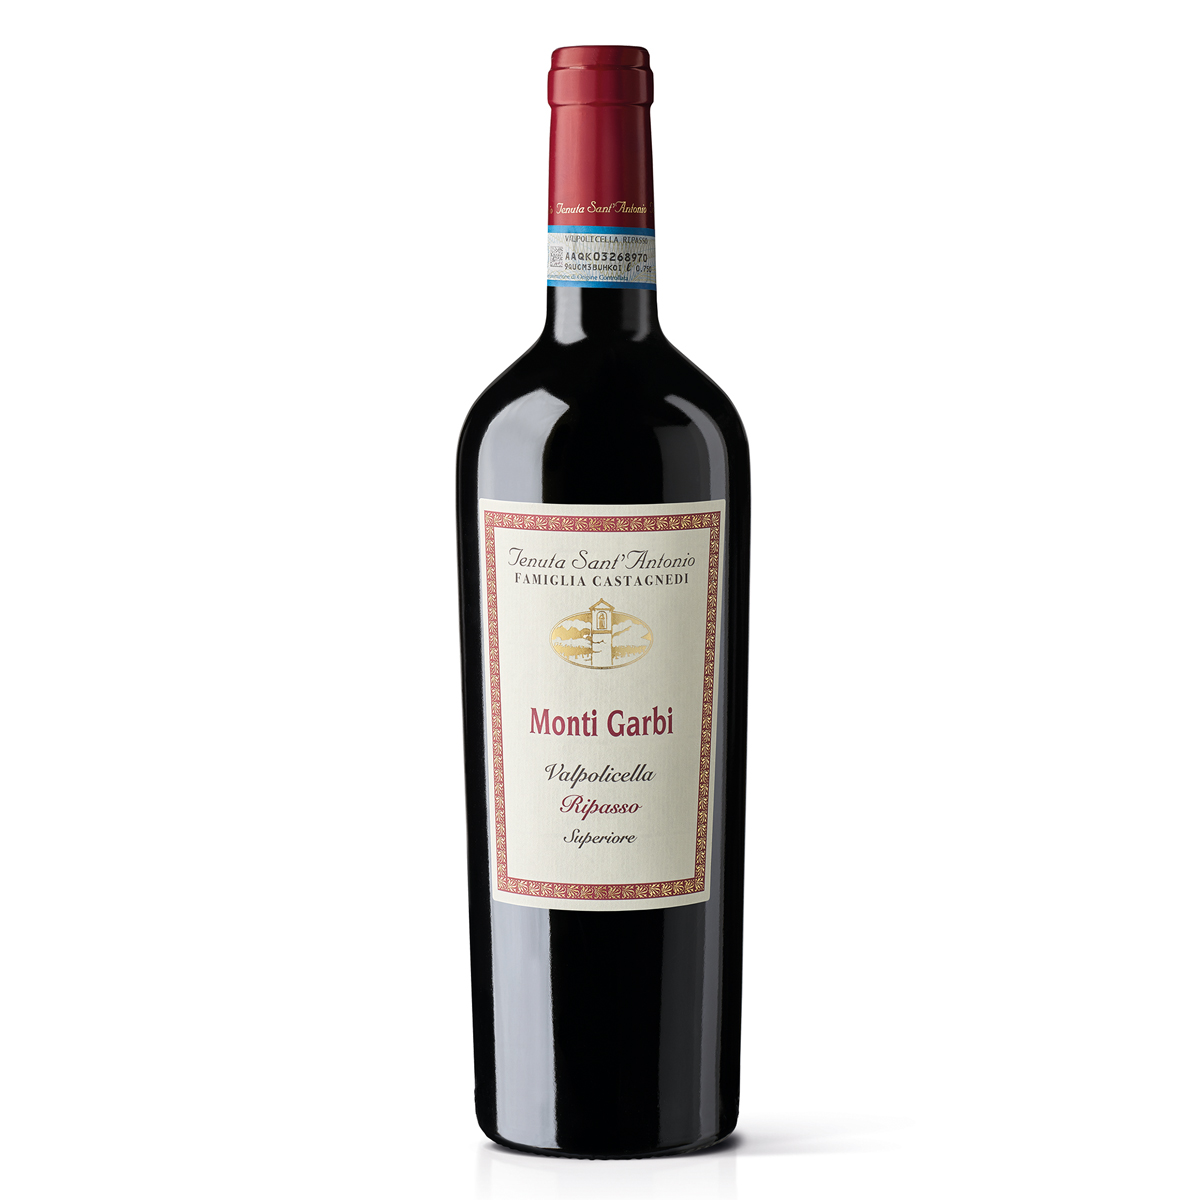 意大利瓦波利塞拉蒙蒂·加爾比紅葡萄酒紅酒